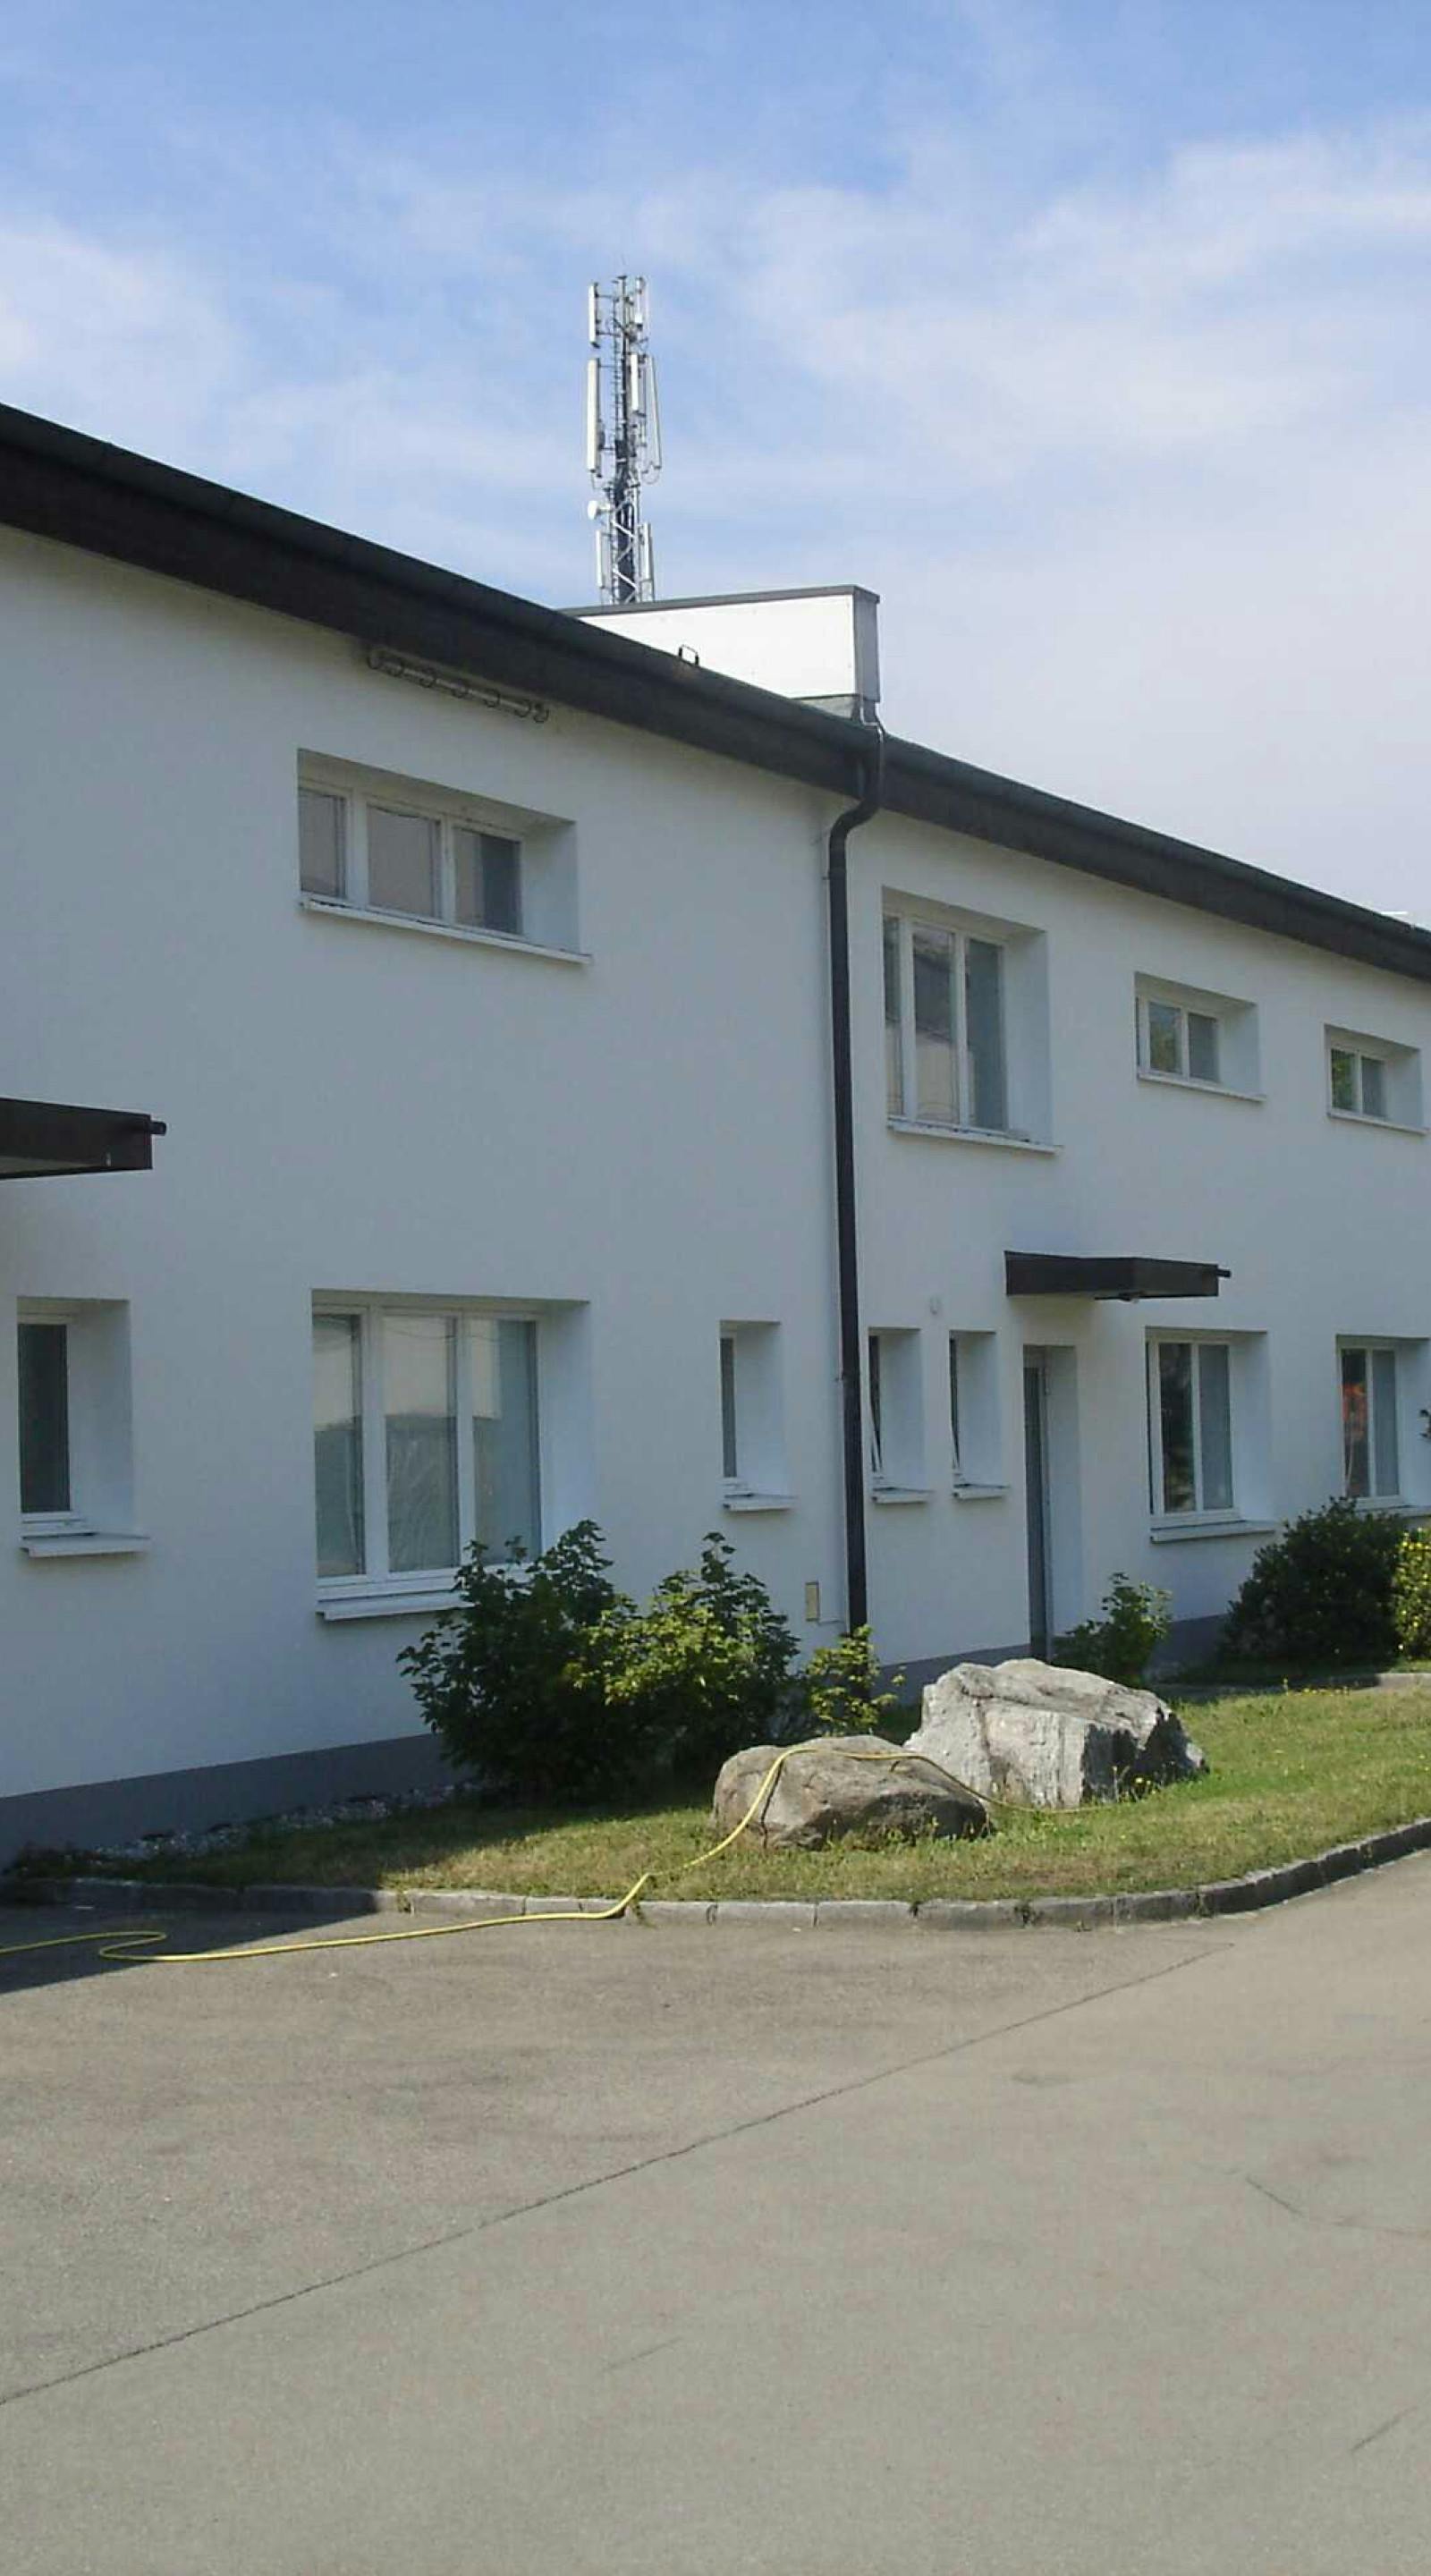 Studiensammlungsgebäude Bregenz